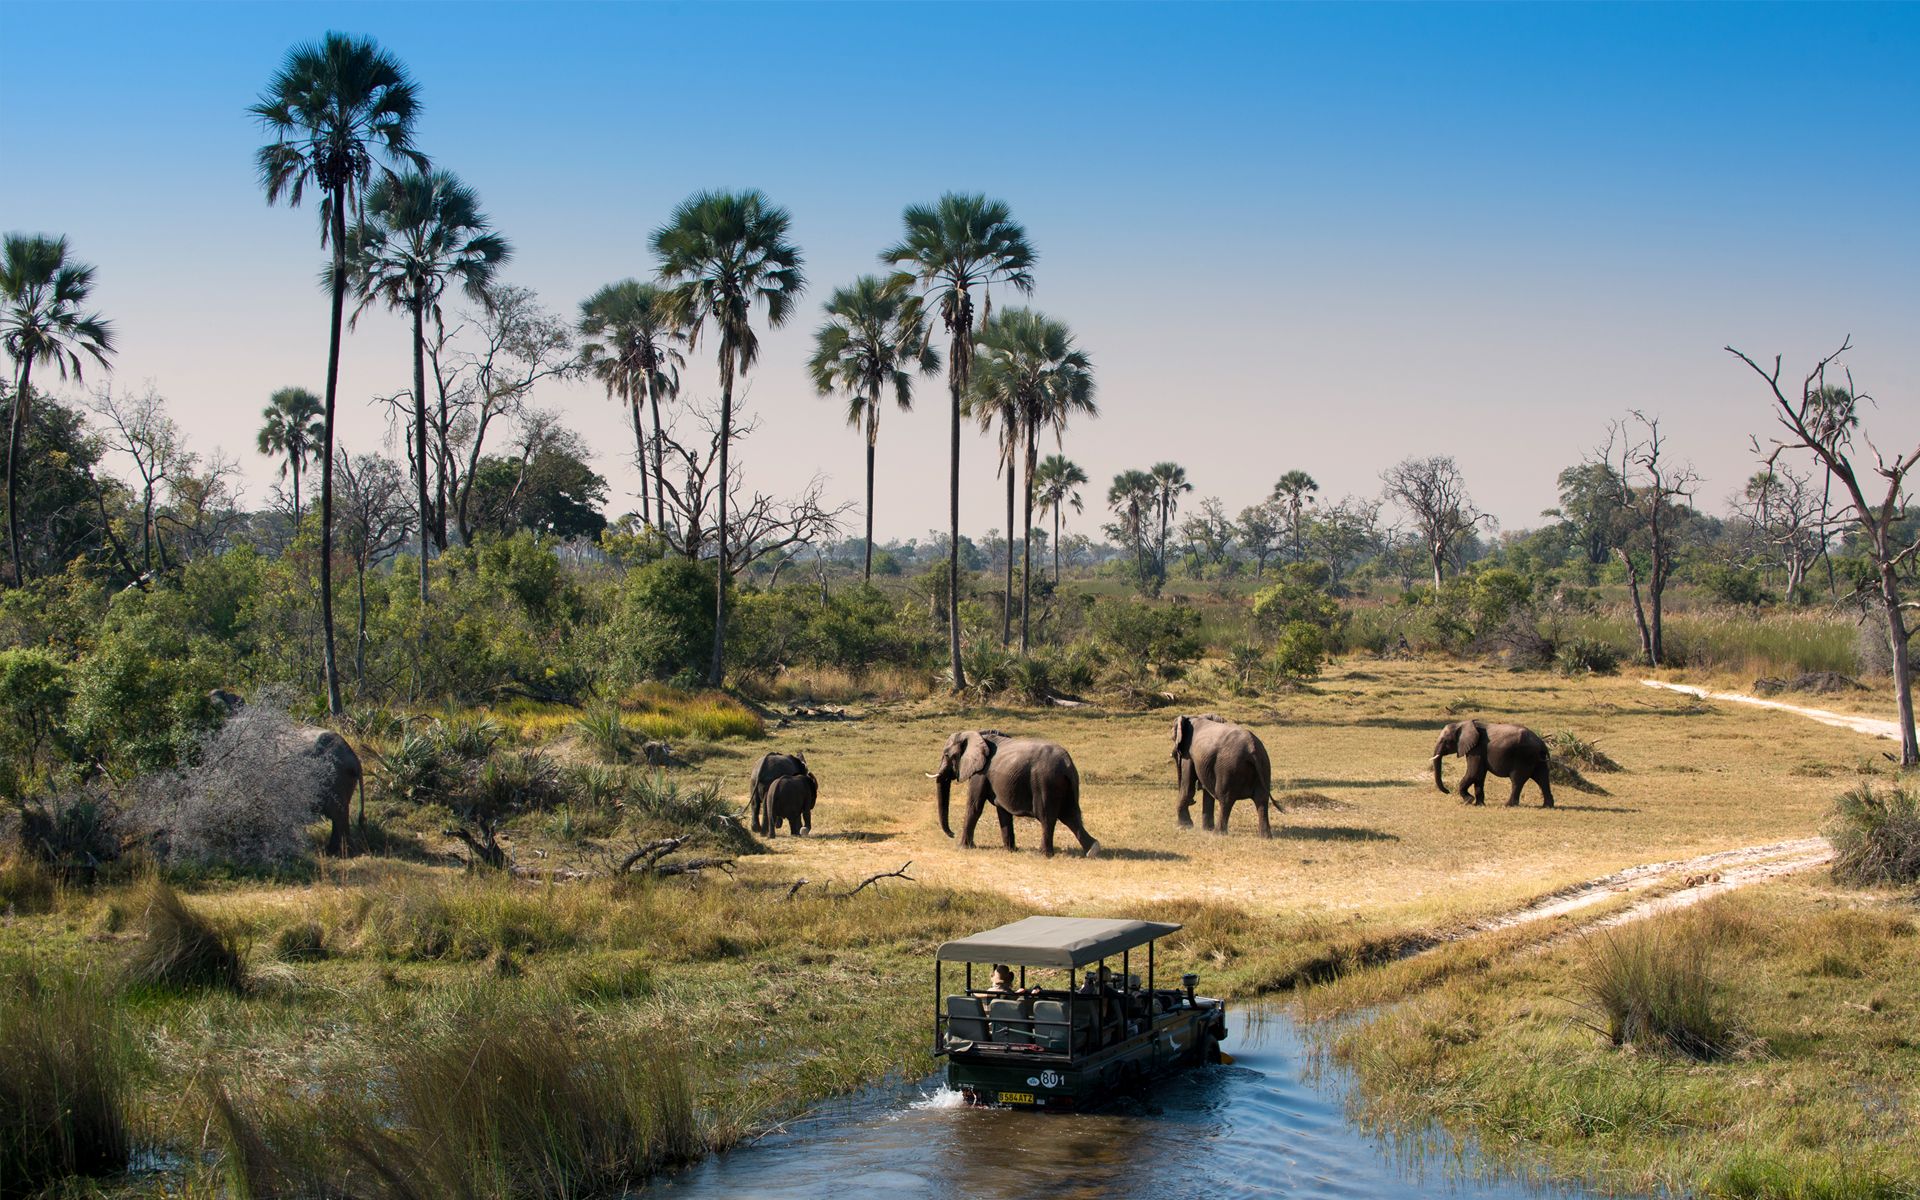 Elephant are abundant throughout Botswana